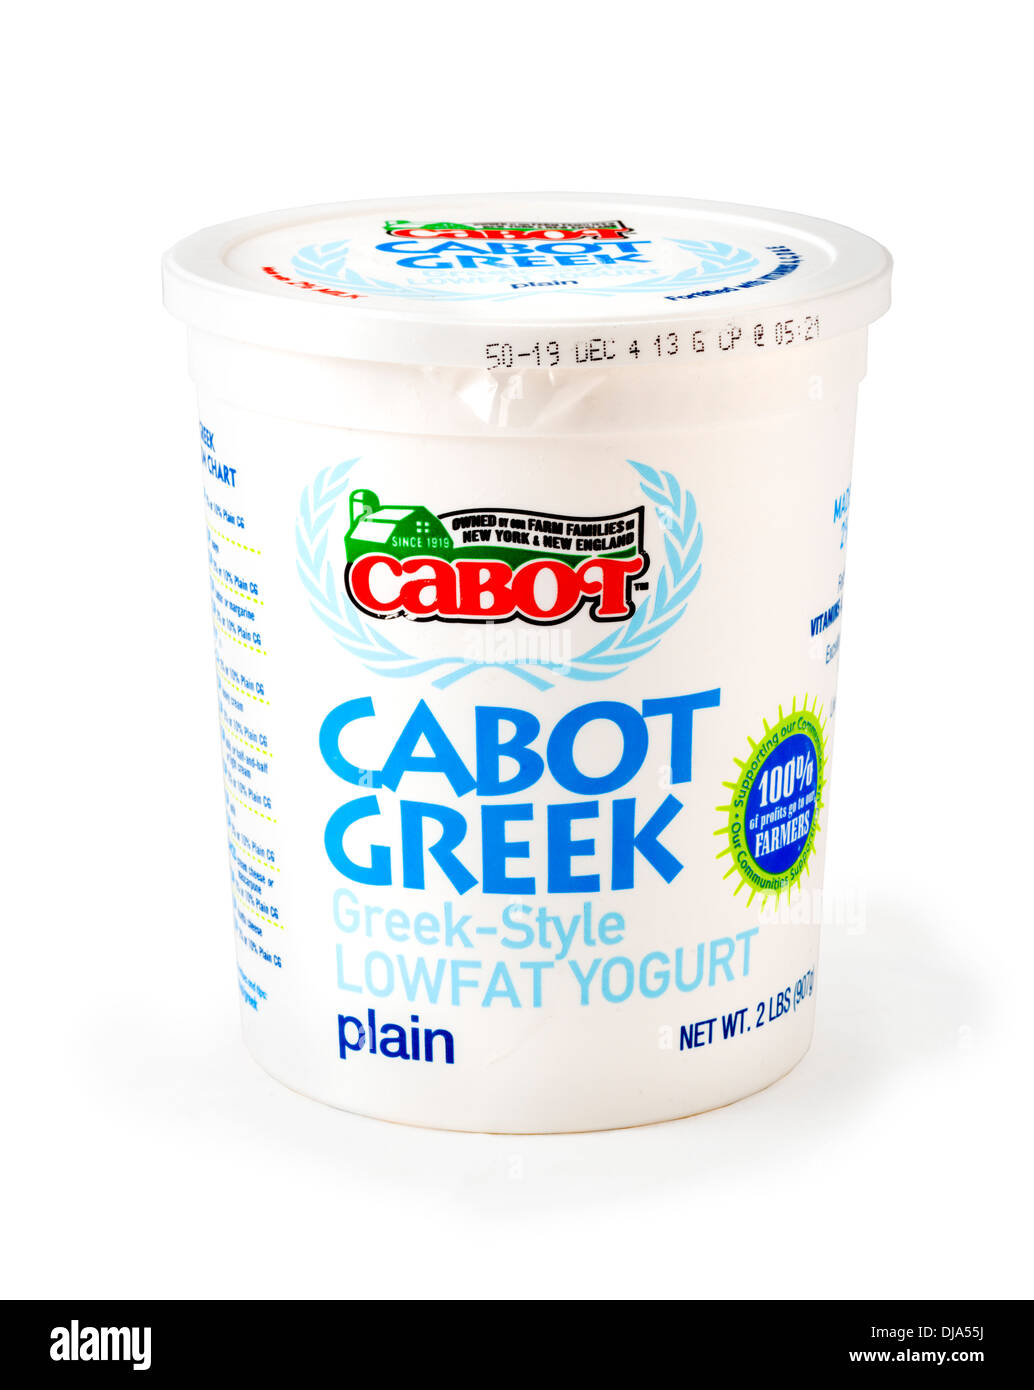 Cartón de Cabot llanura baja en grasa yogur estilo griego, EE.UU. Foto de stock